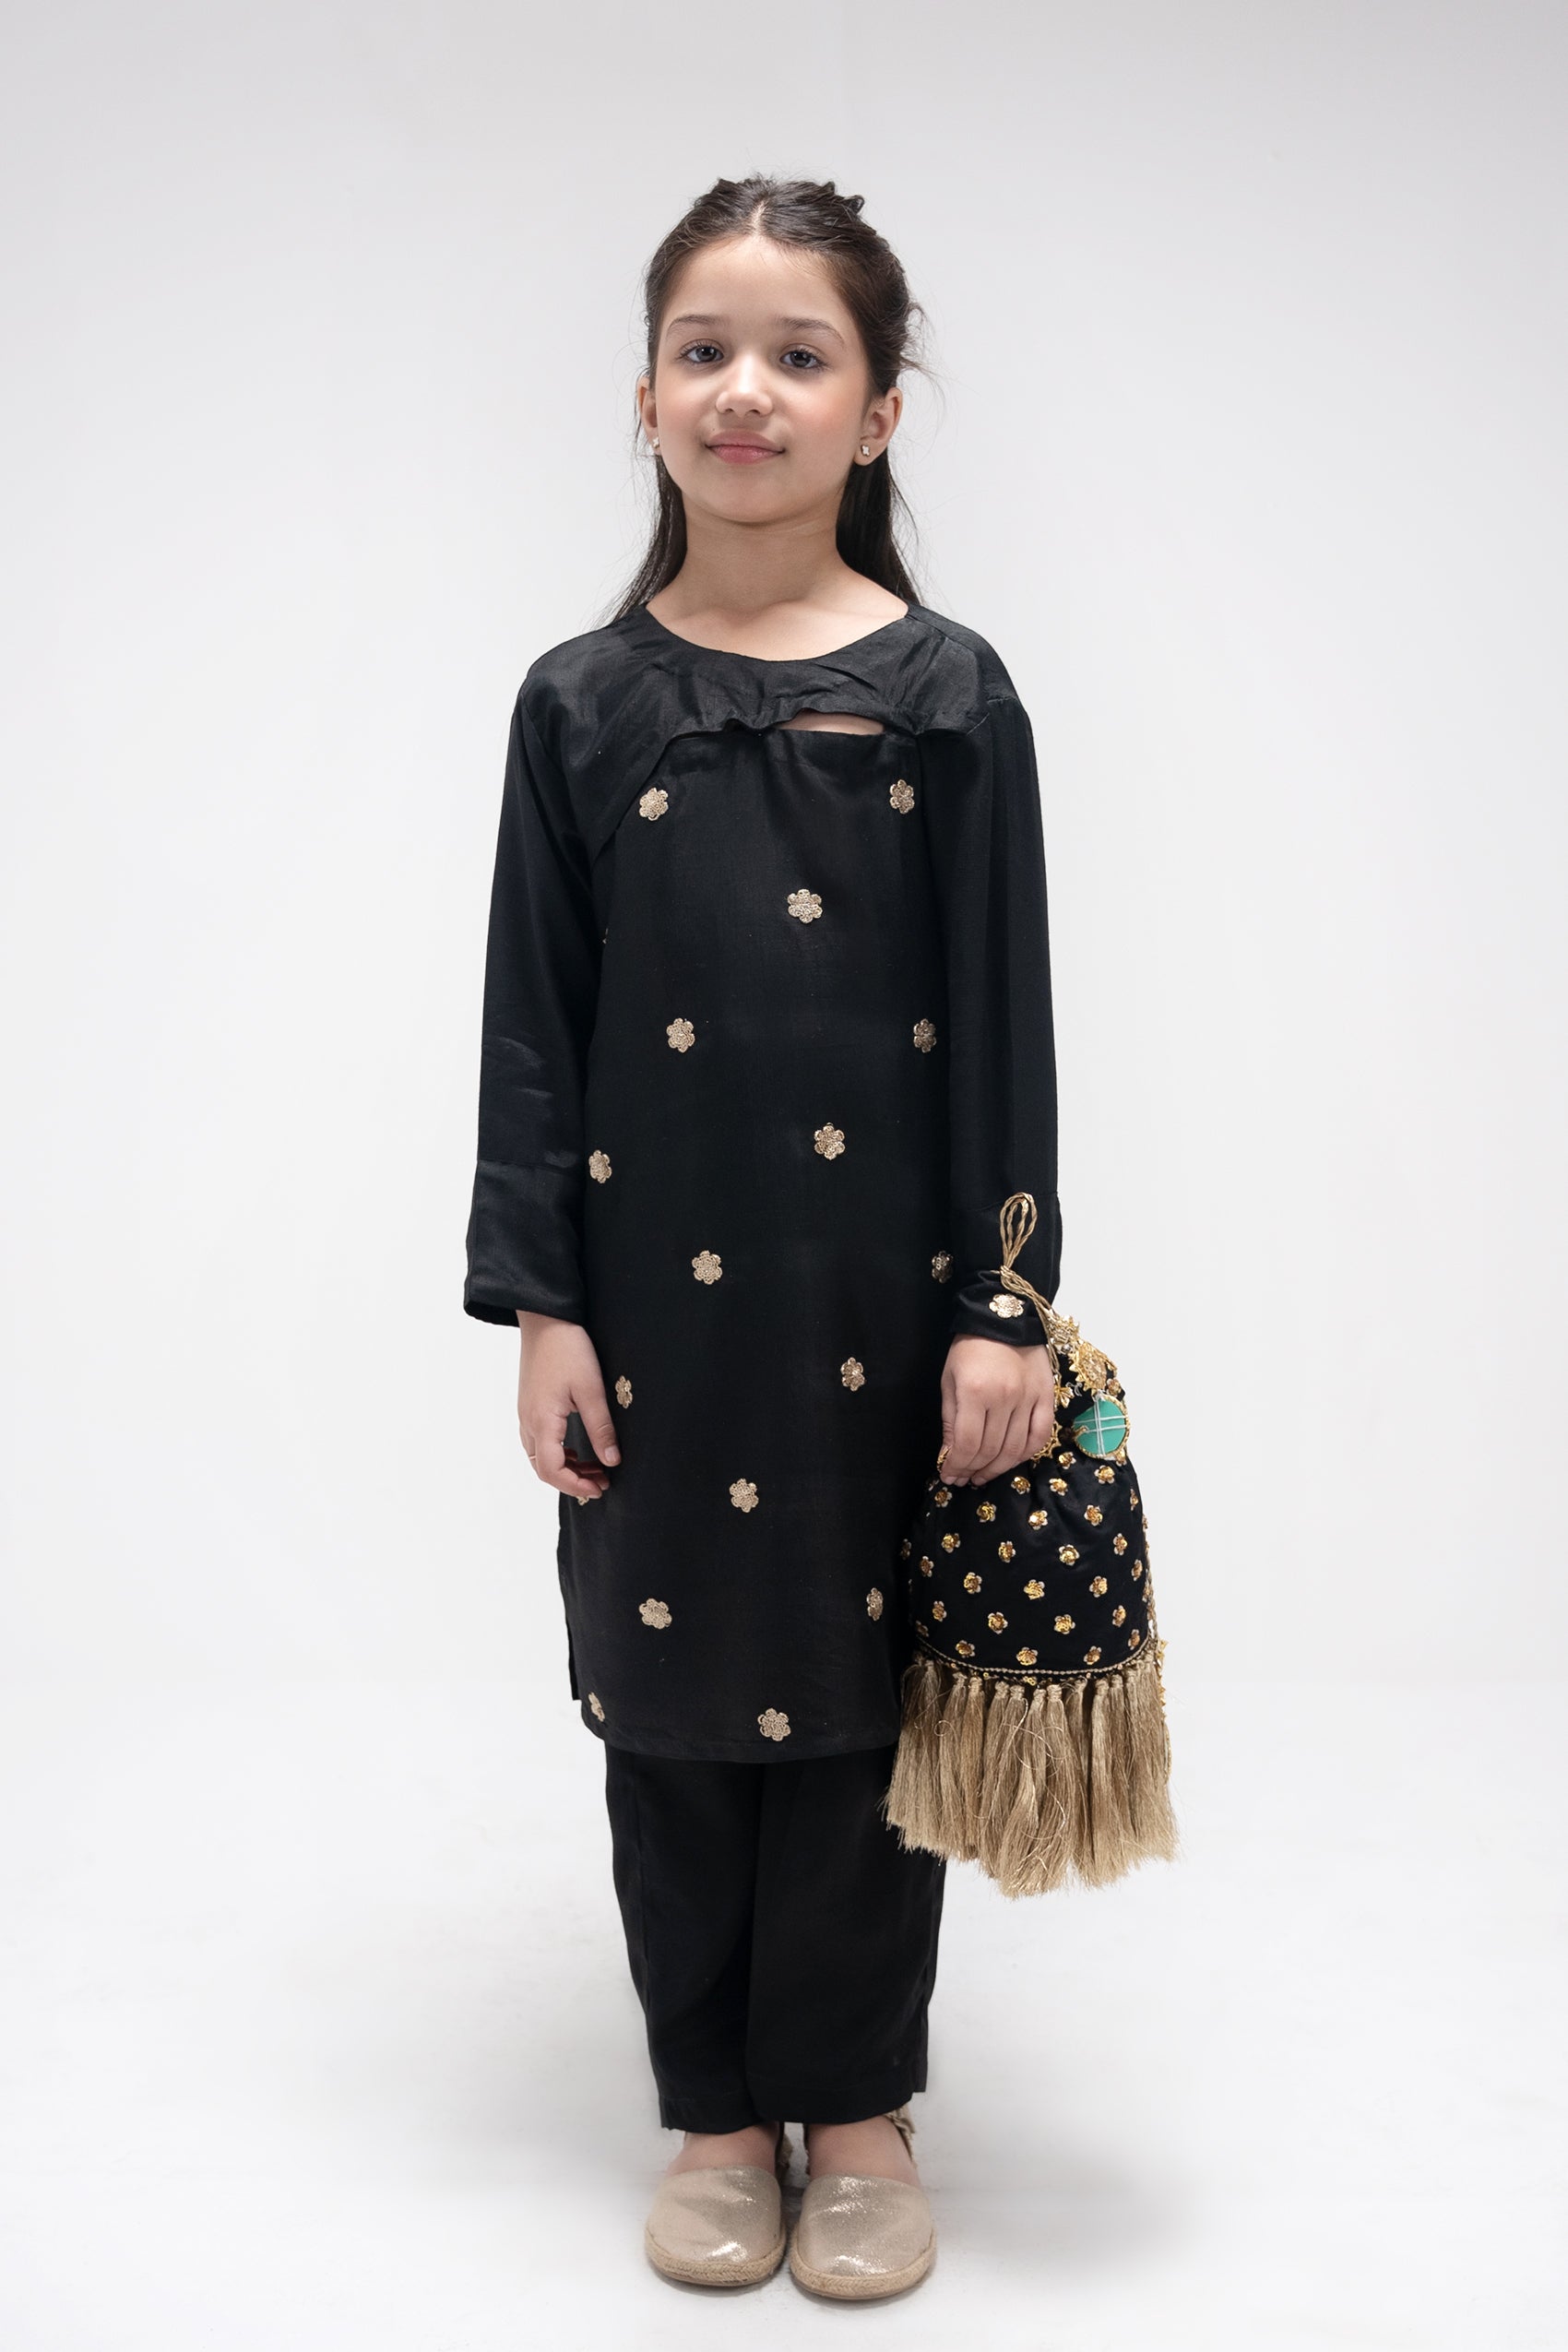 Buy kids clothes online in Pakistan 